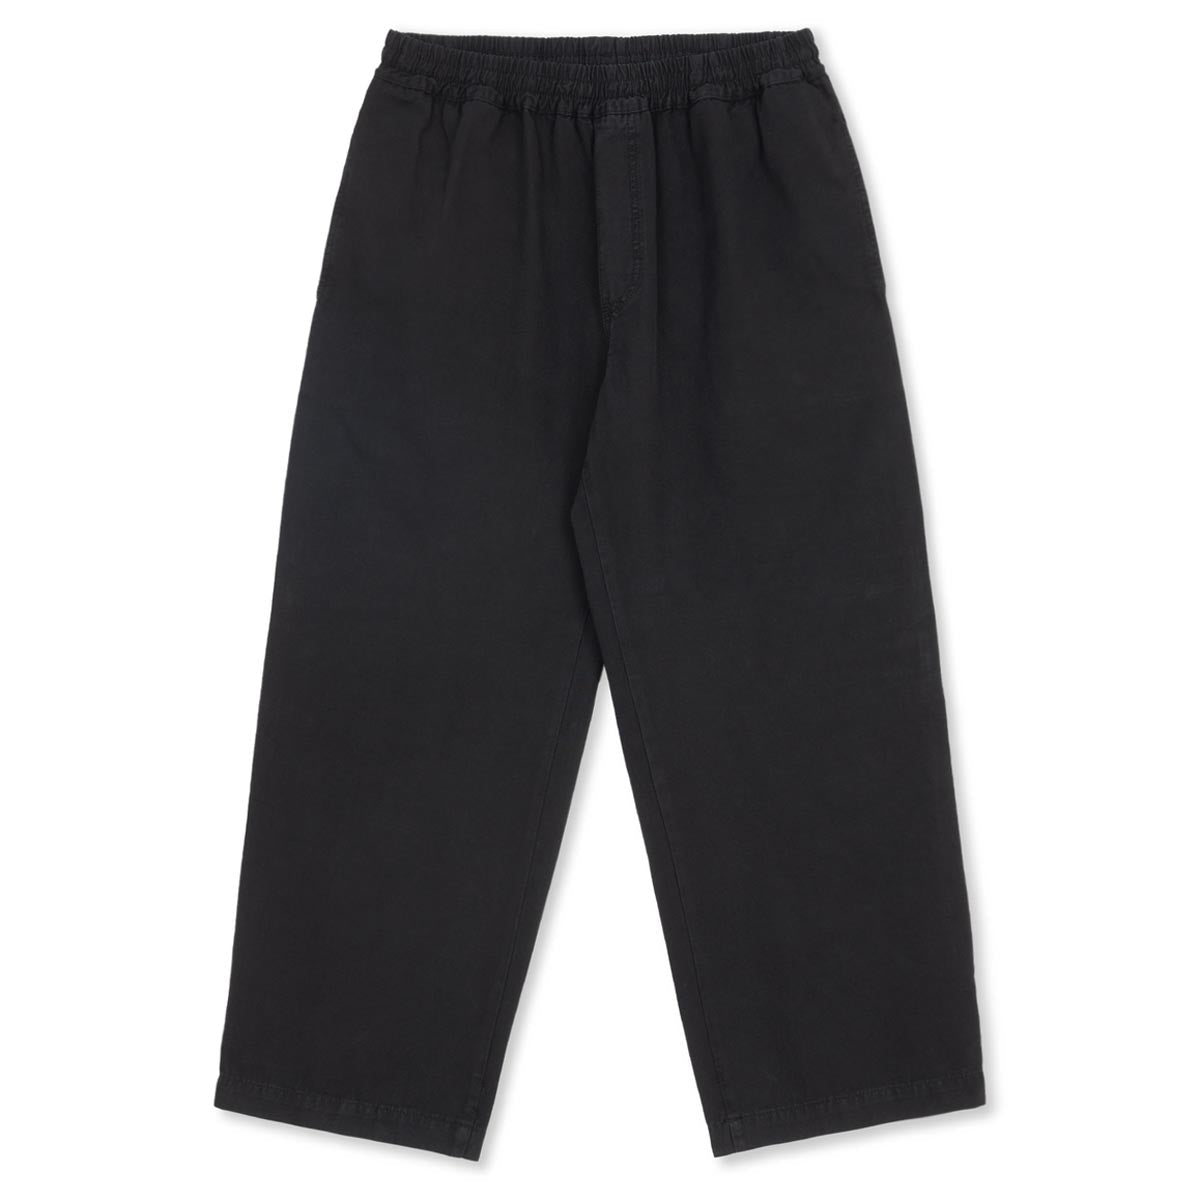 Polar Karate Pants - Black image 1